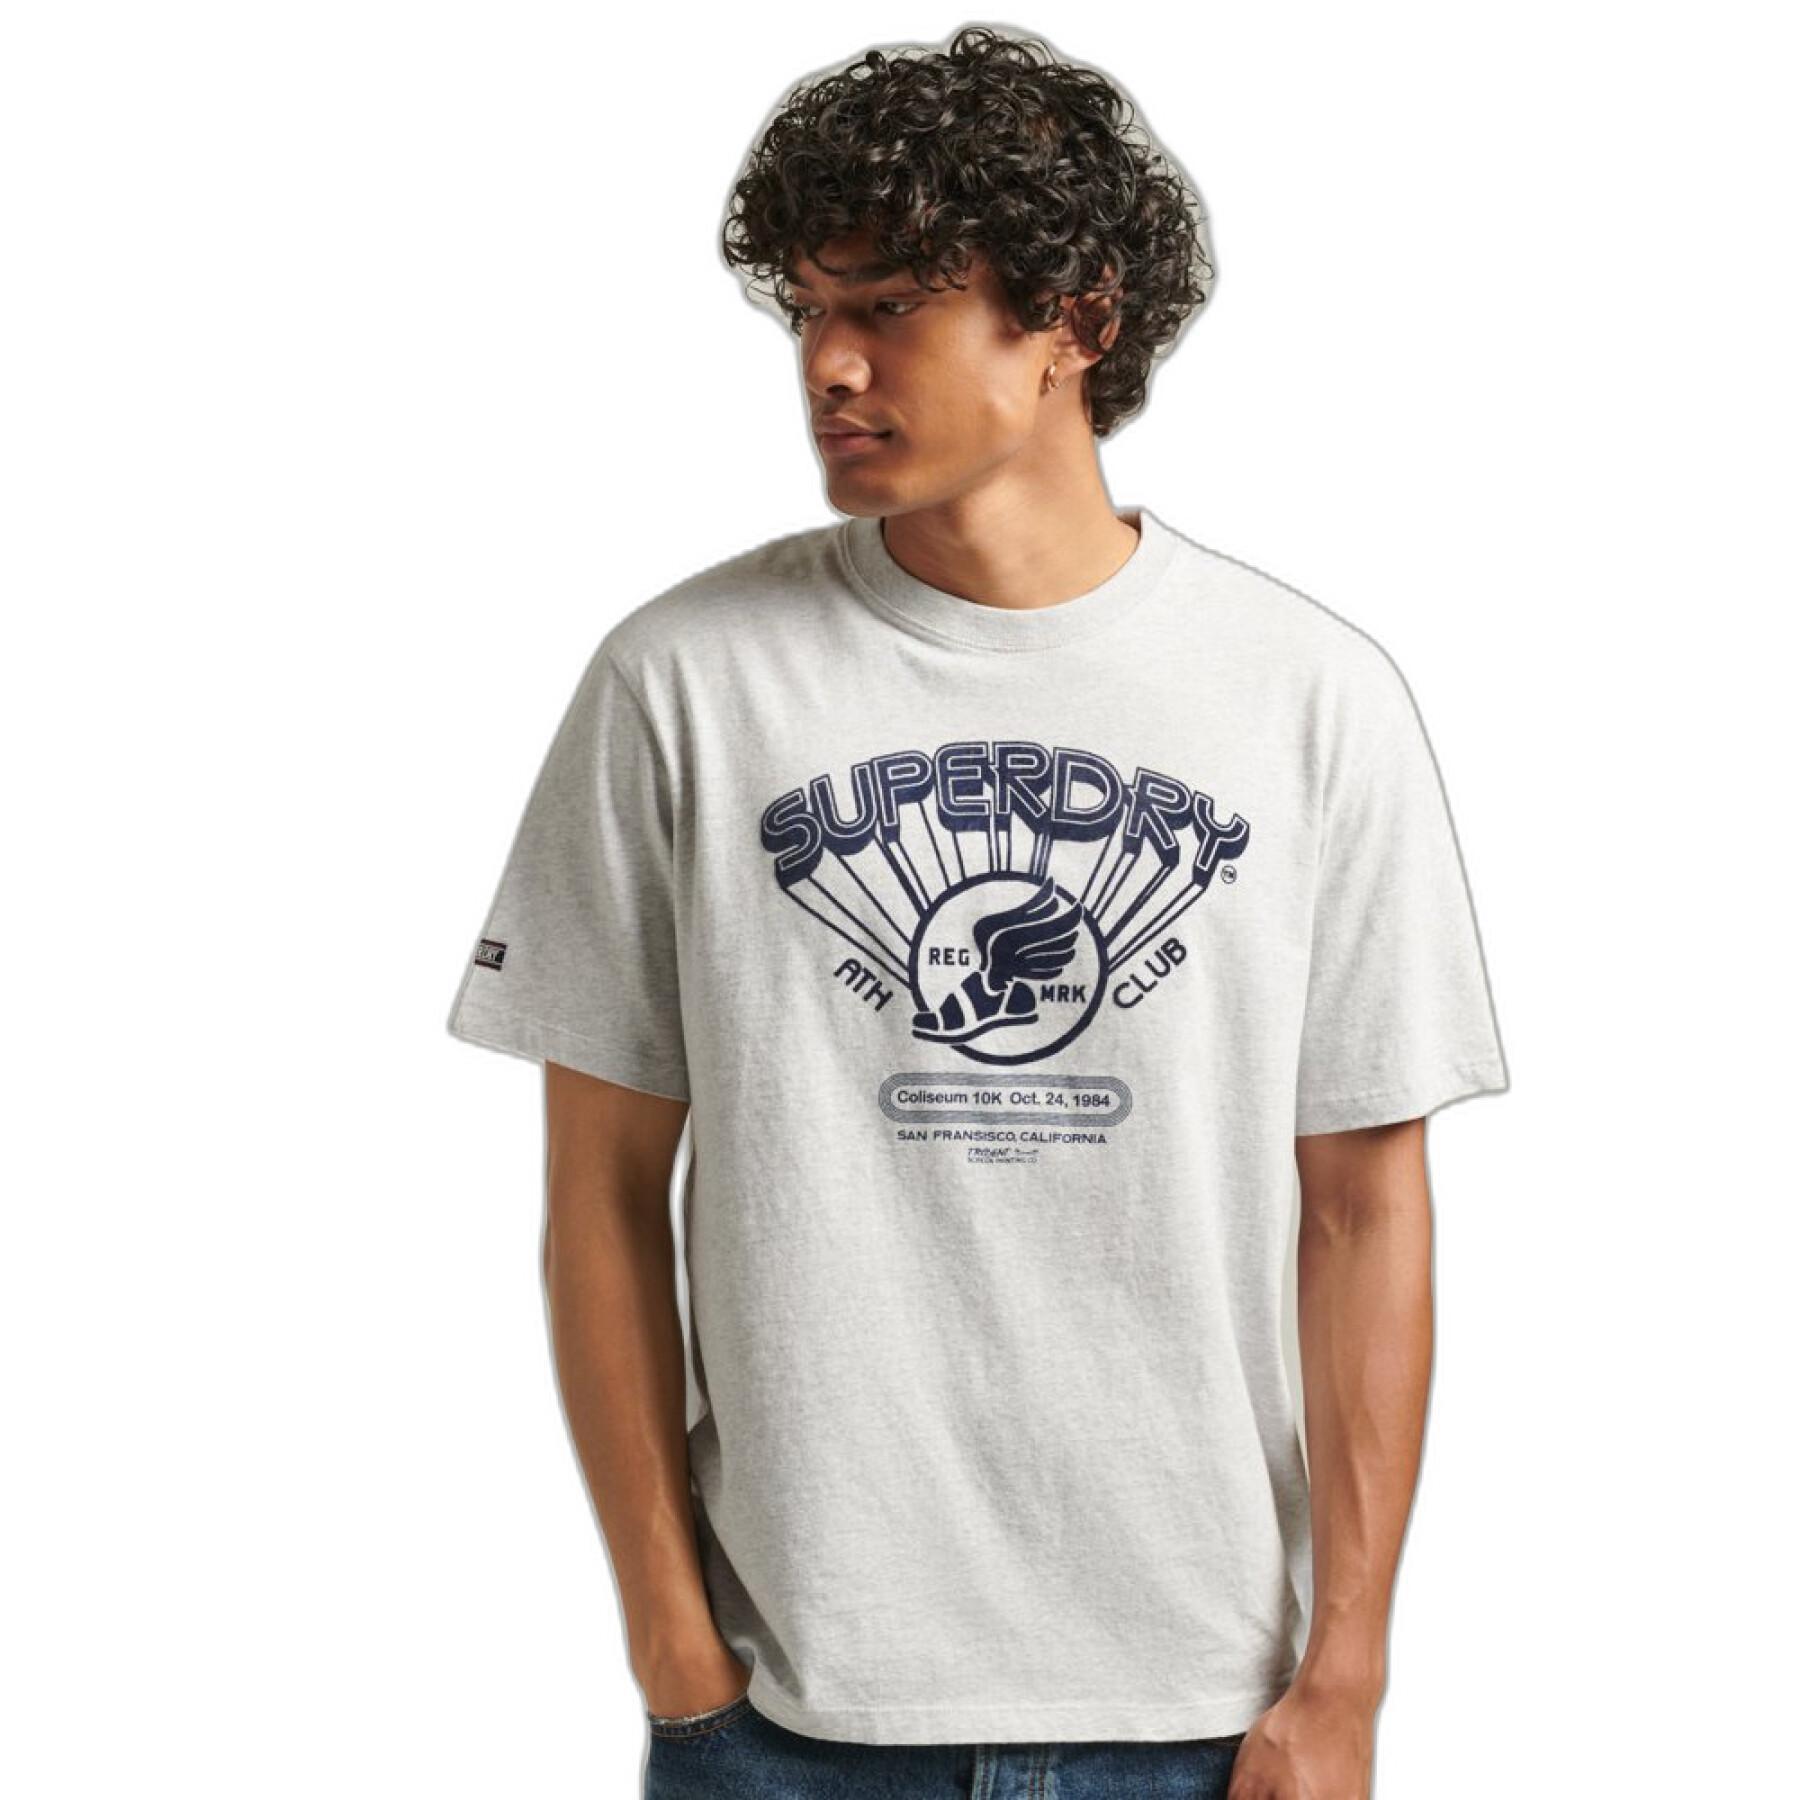 aus - Polohemden Vintage T-Shirt Club Kleidung - Athletic Bio-Baumwolle T-Shirts & - Superdry Herren